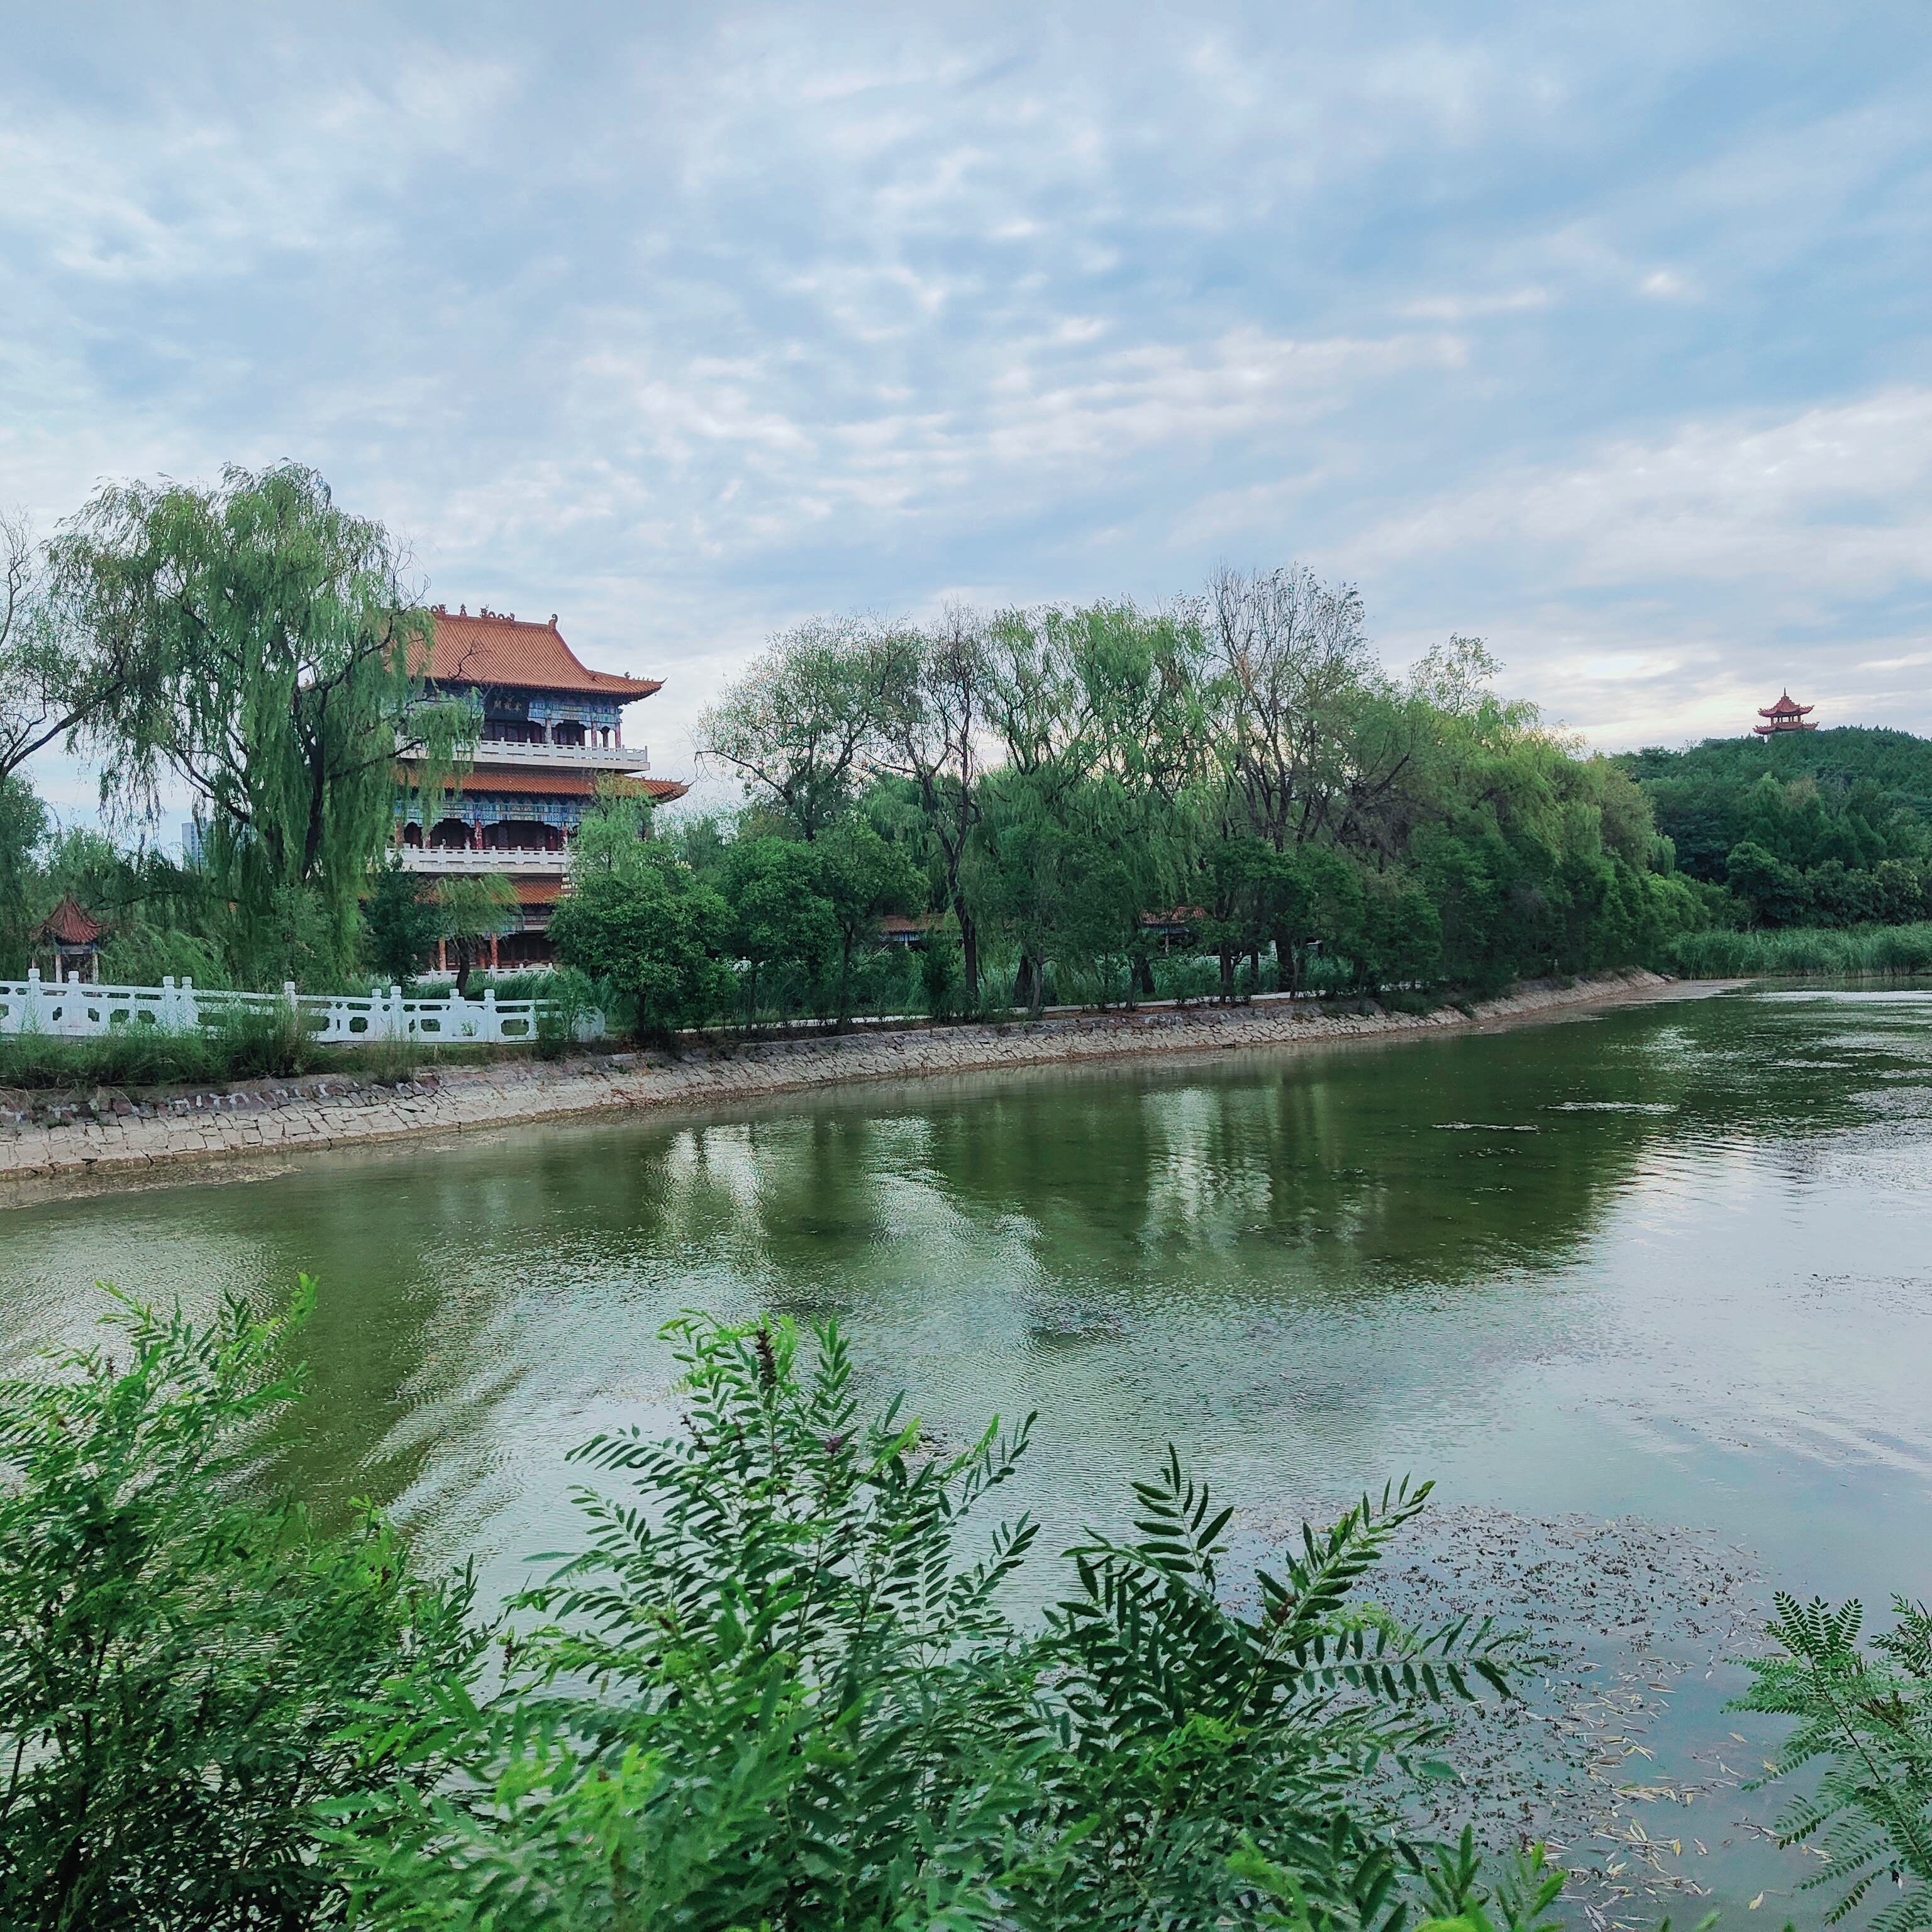 2022年8月23日拍摄地点:禹州市森林植物园手机随拍:贺景昌编辑:马阳